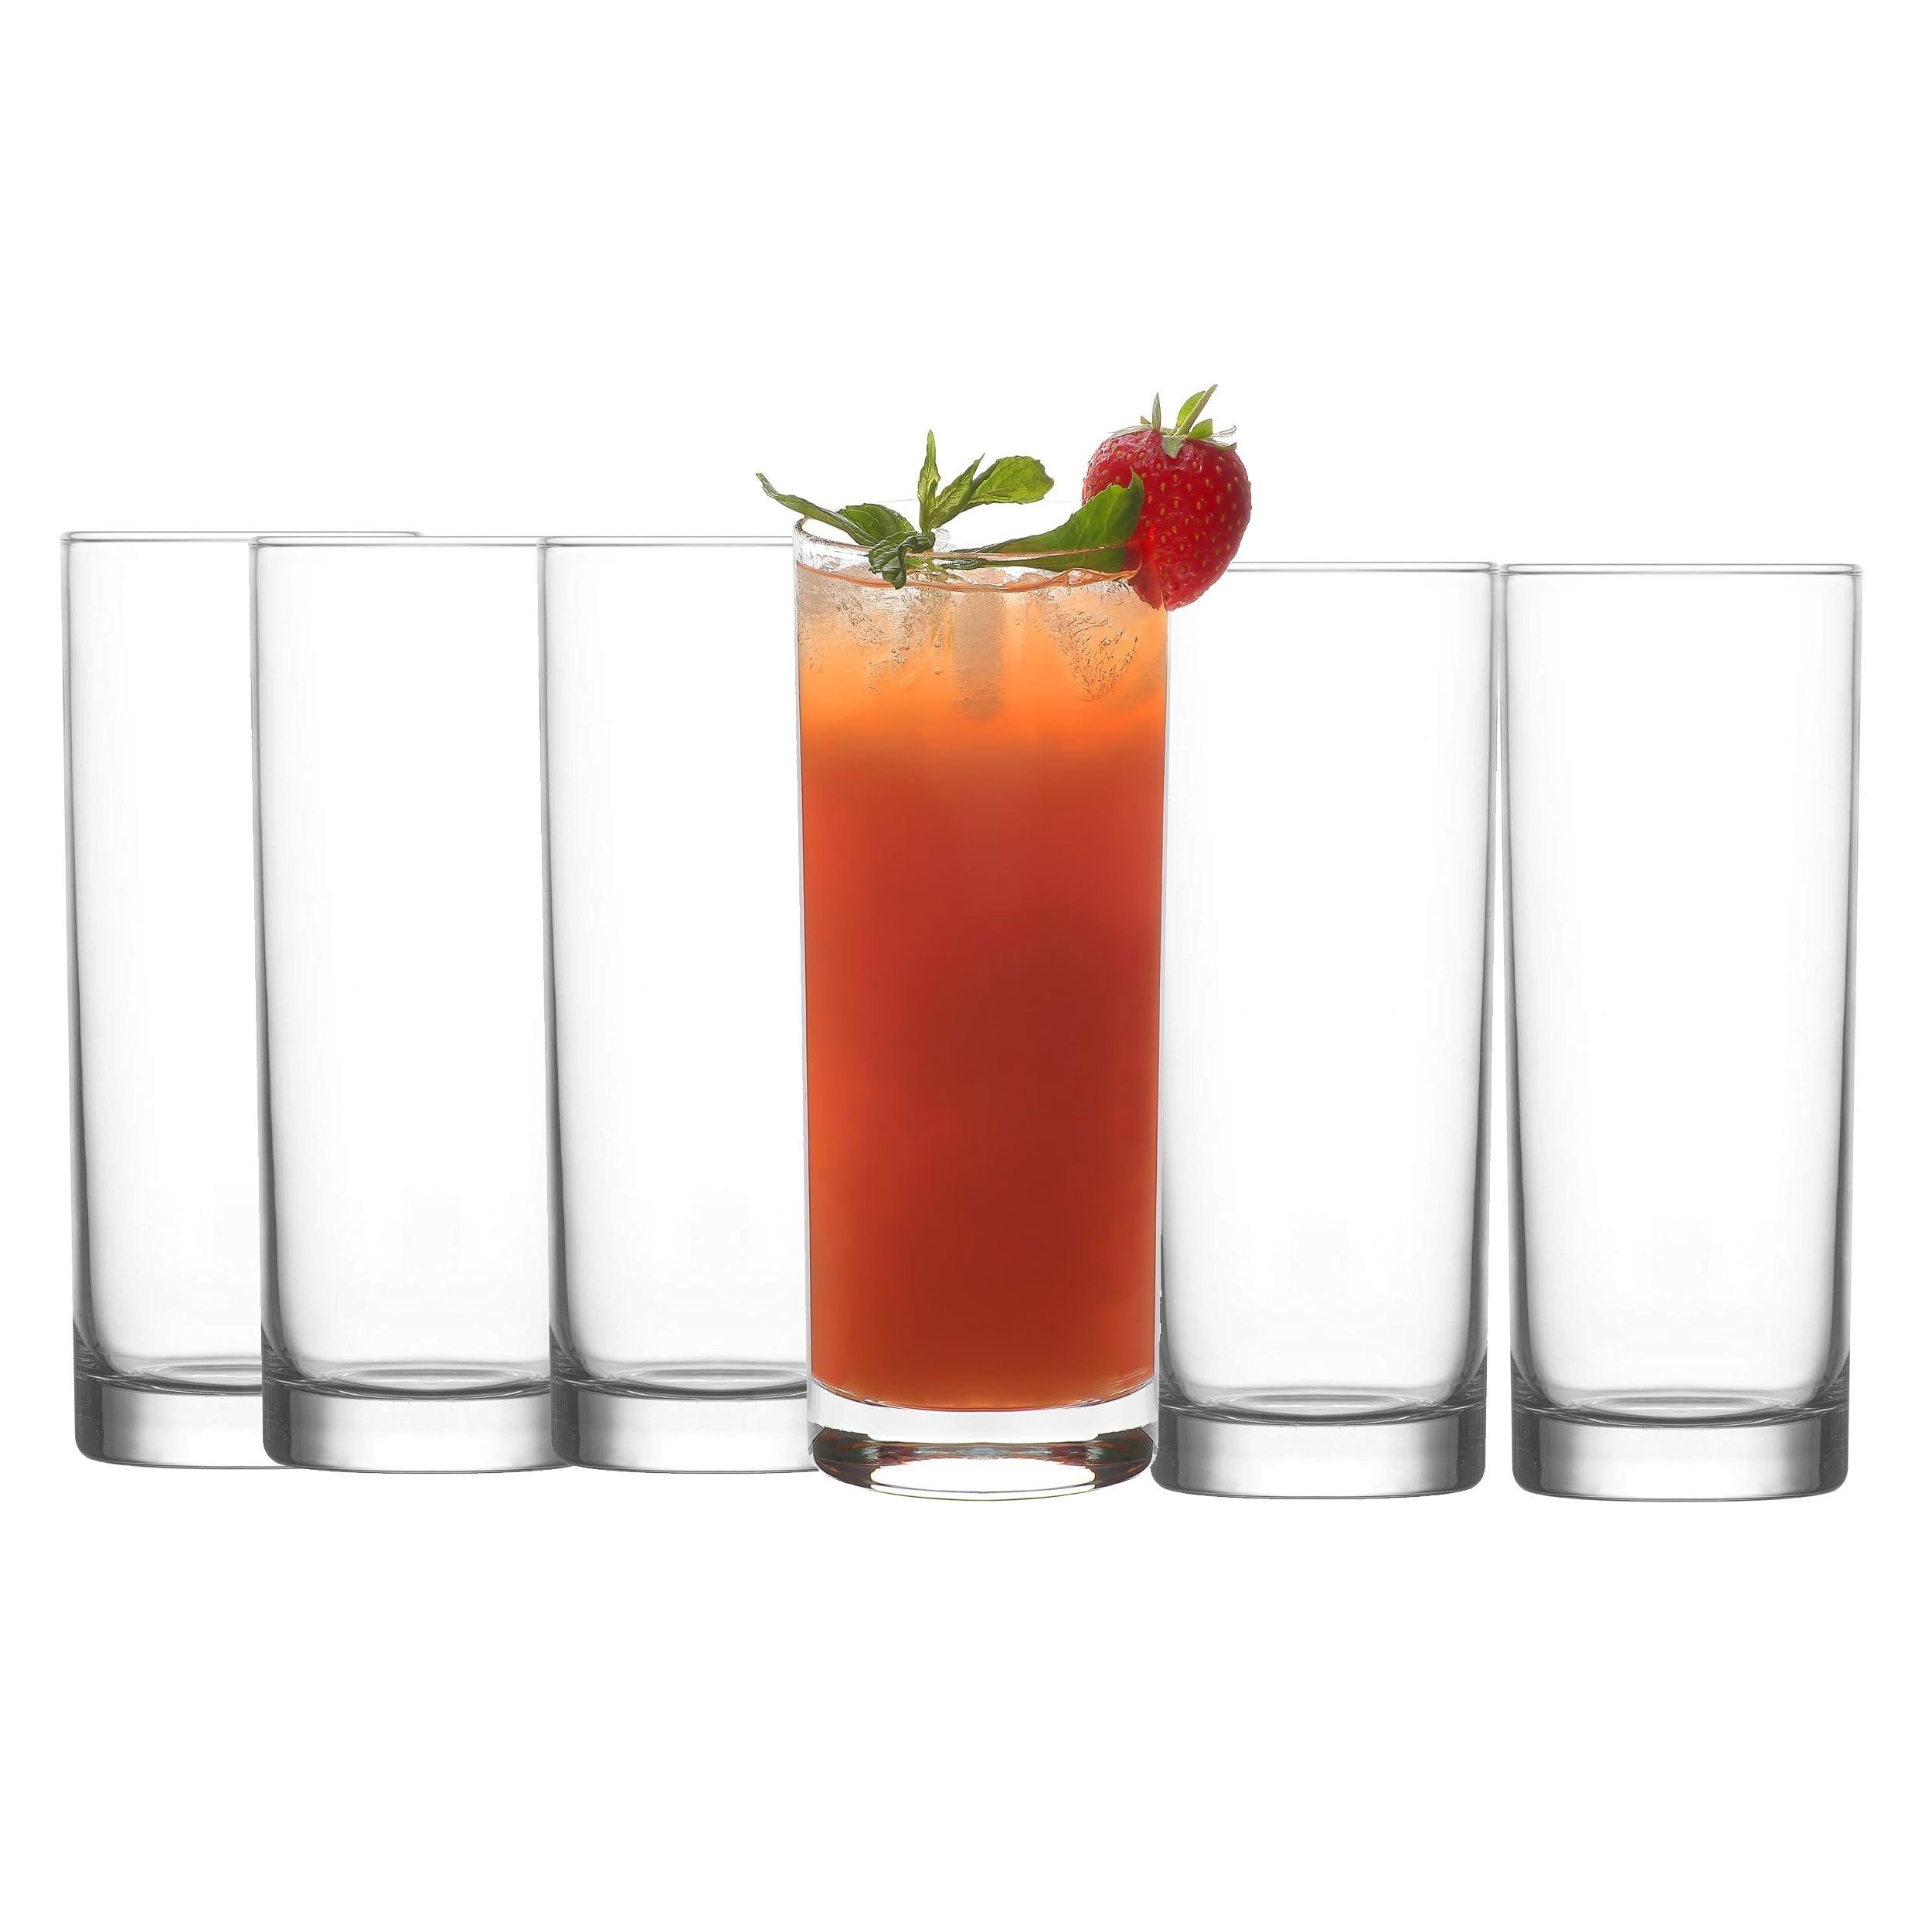 LAV Longdrinkglas Long Drinks 360 ml Gläser Set 6tlg Trinkglas LBR340  Saftgläser, Glas, Spülmaschinenfest